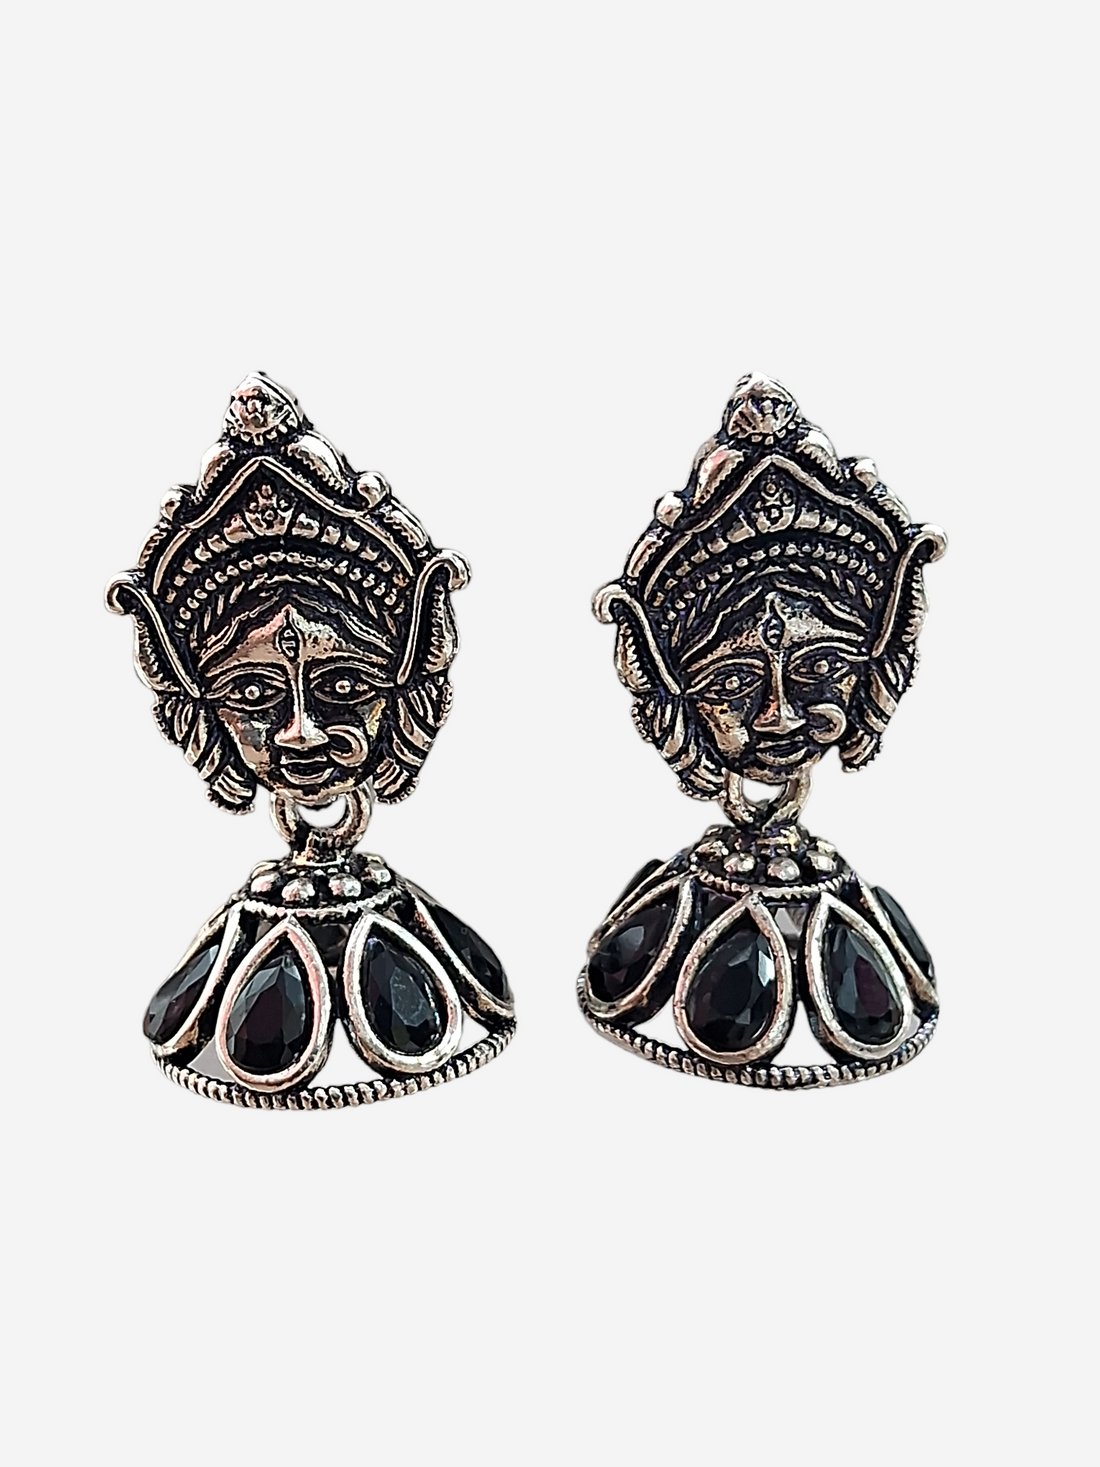 Goddess Durga Face Jhumki, Silver Plated Earrings